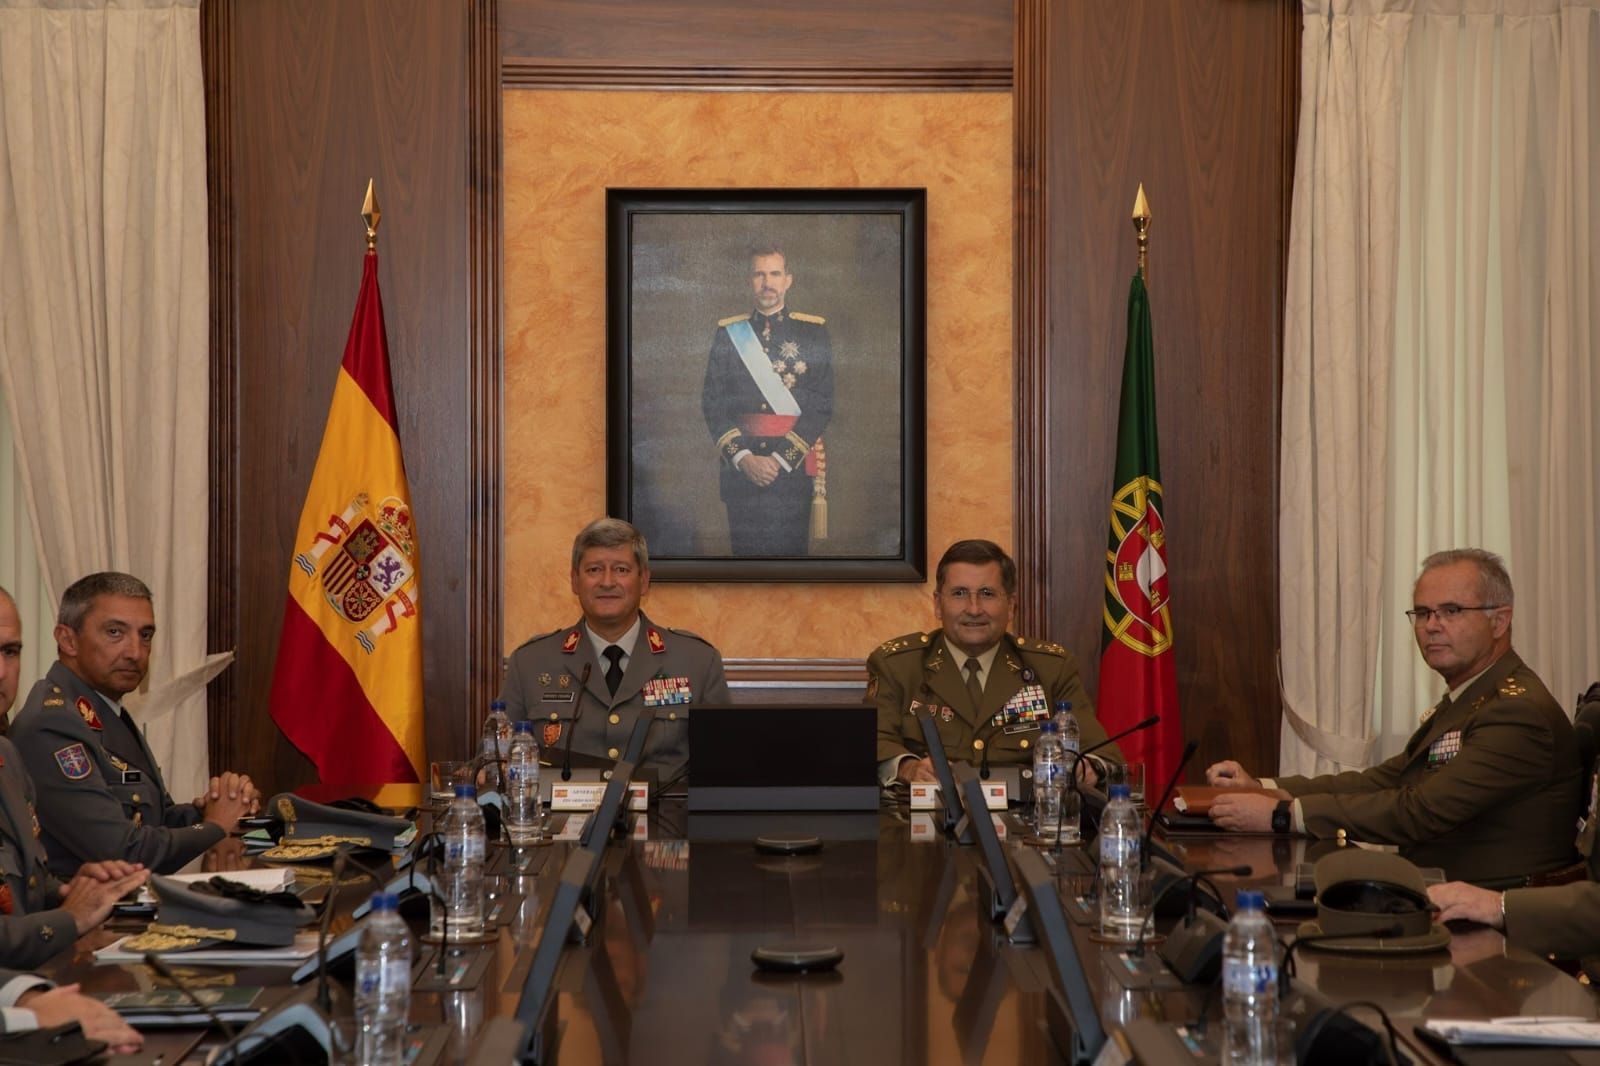 El JEME recibe al GE Eduardo Manuel Braga da Cruz Mendes Ferrão JEME Exército Português